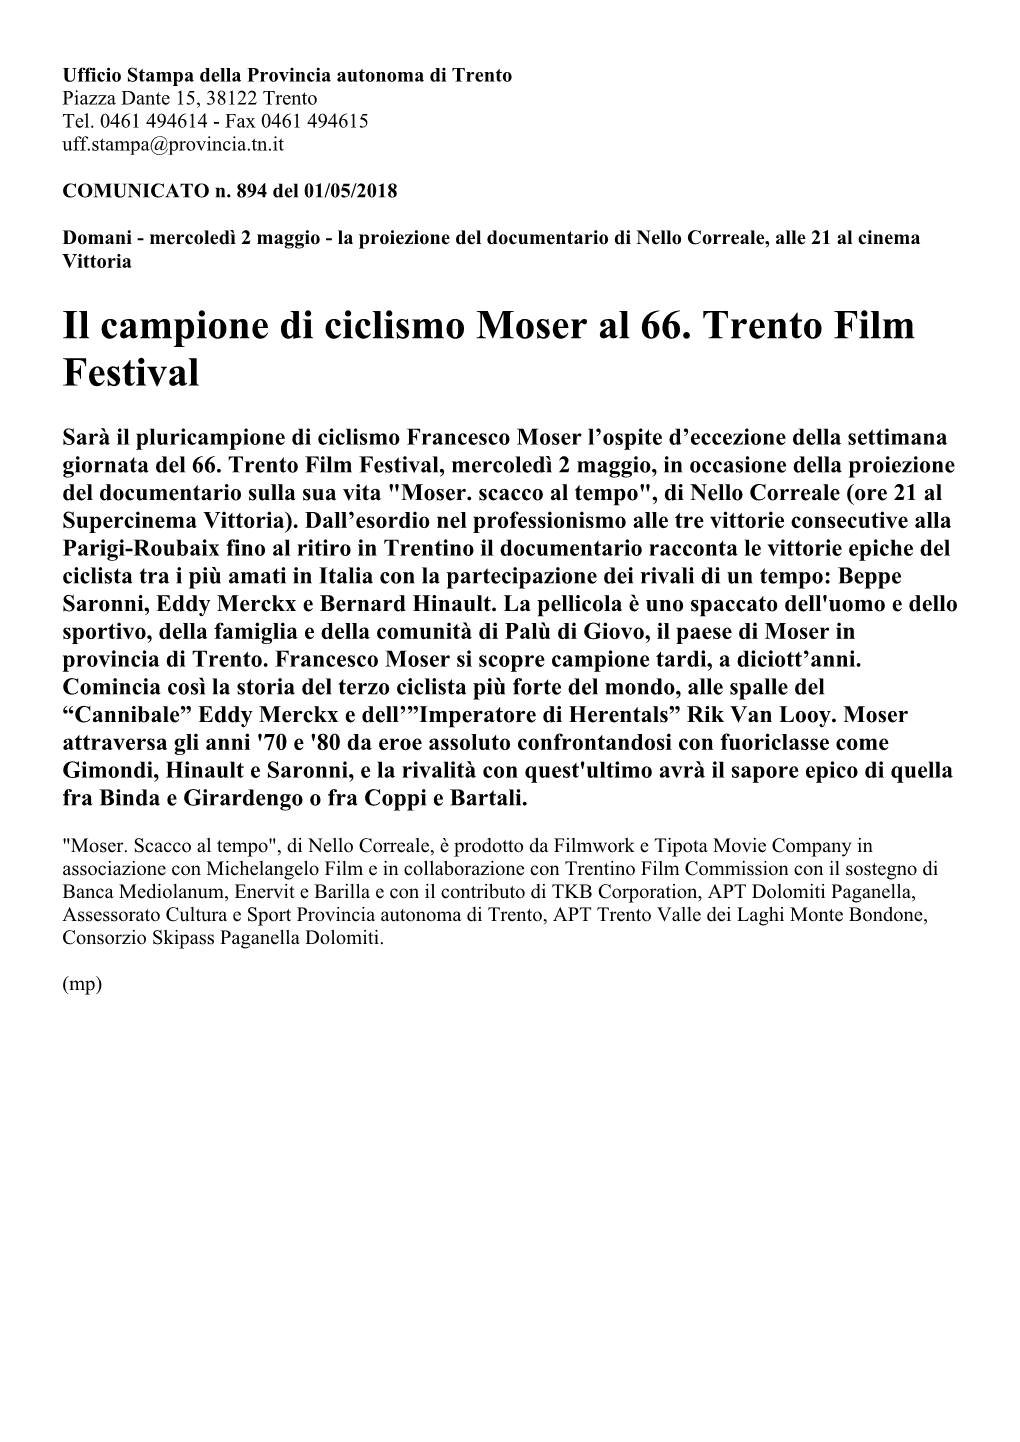 Il Campione Di Ciclismo Moser Al 66. Trento Film Festival